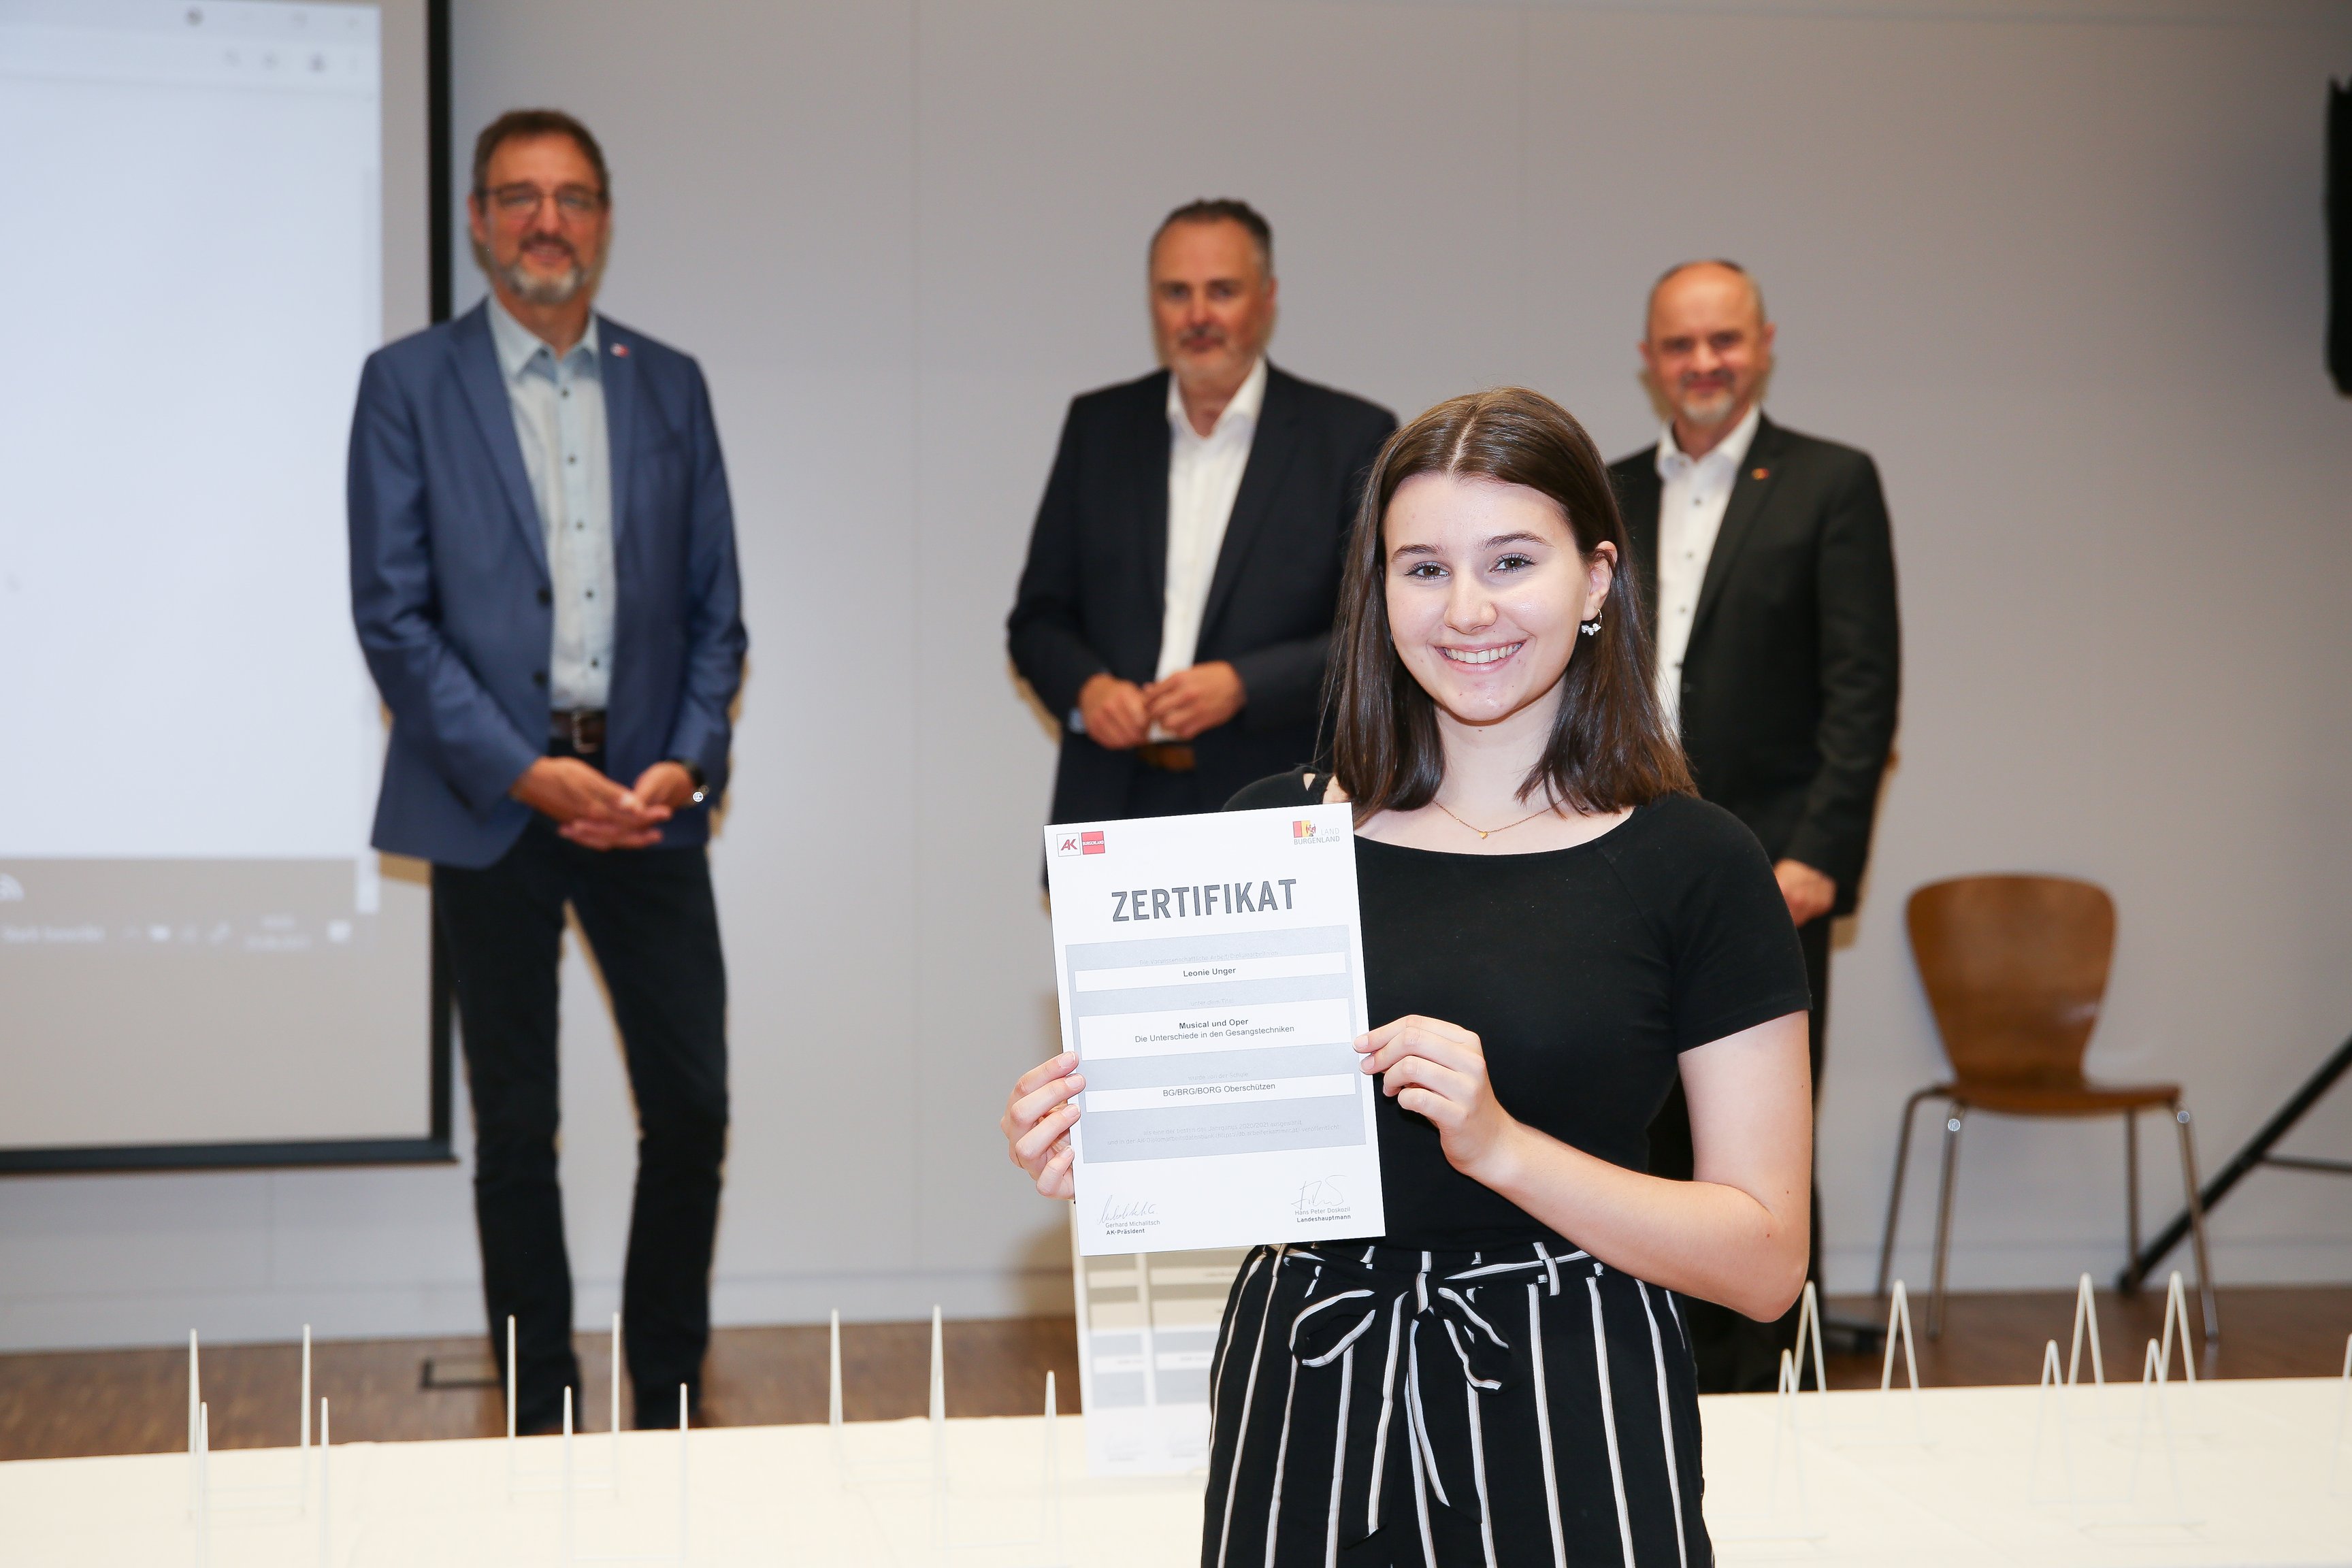 SchülerInnen der Schule "GYM Oberschützen" erhalten Zertifikat für ihre schriftliche Arbeit "Musical und Oper. Die Unterschiede in den Gesangstechniken".